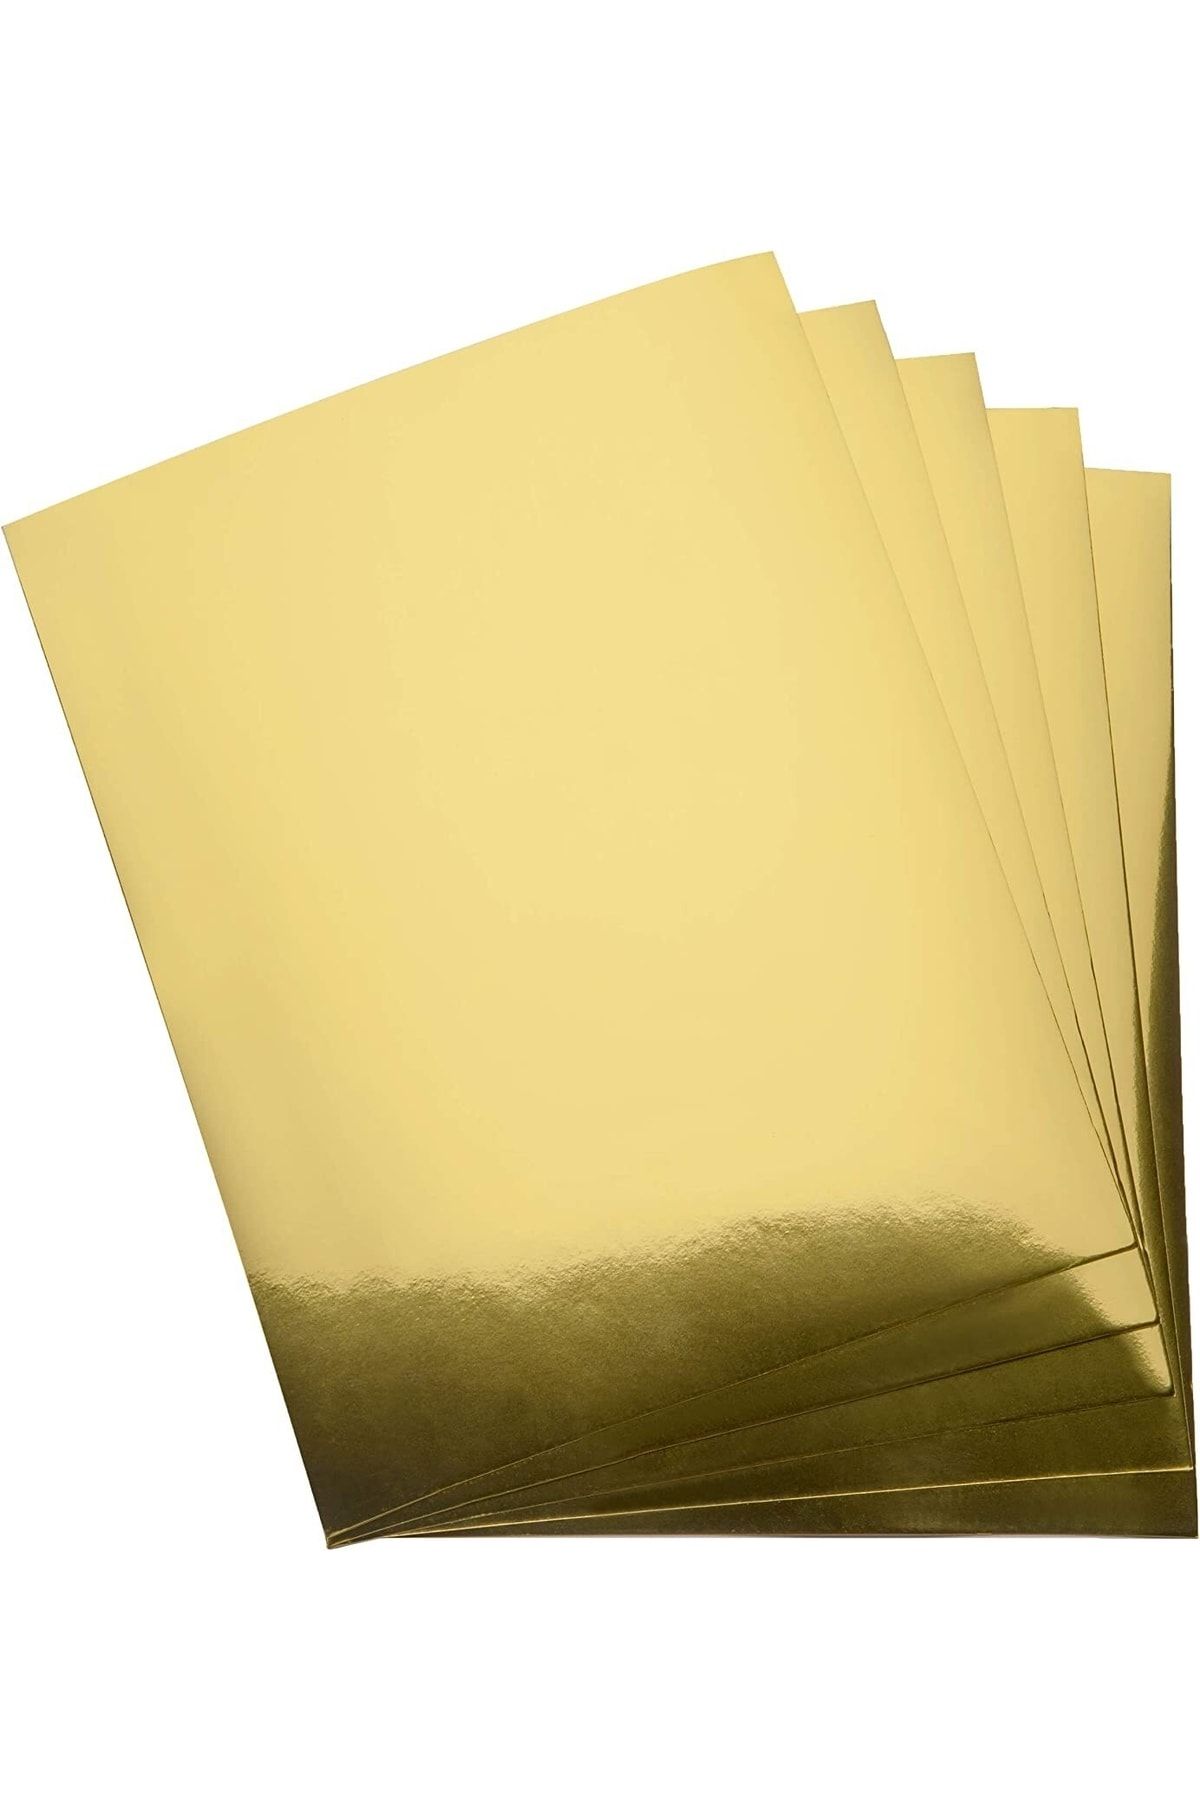 roco paper Metalik Fon Kartonu - Aynalı Fon Kartonu - 200 Gr. 50*70 Cm - Altın